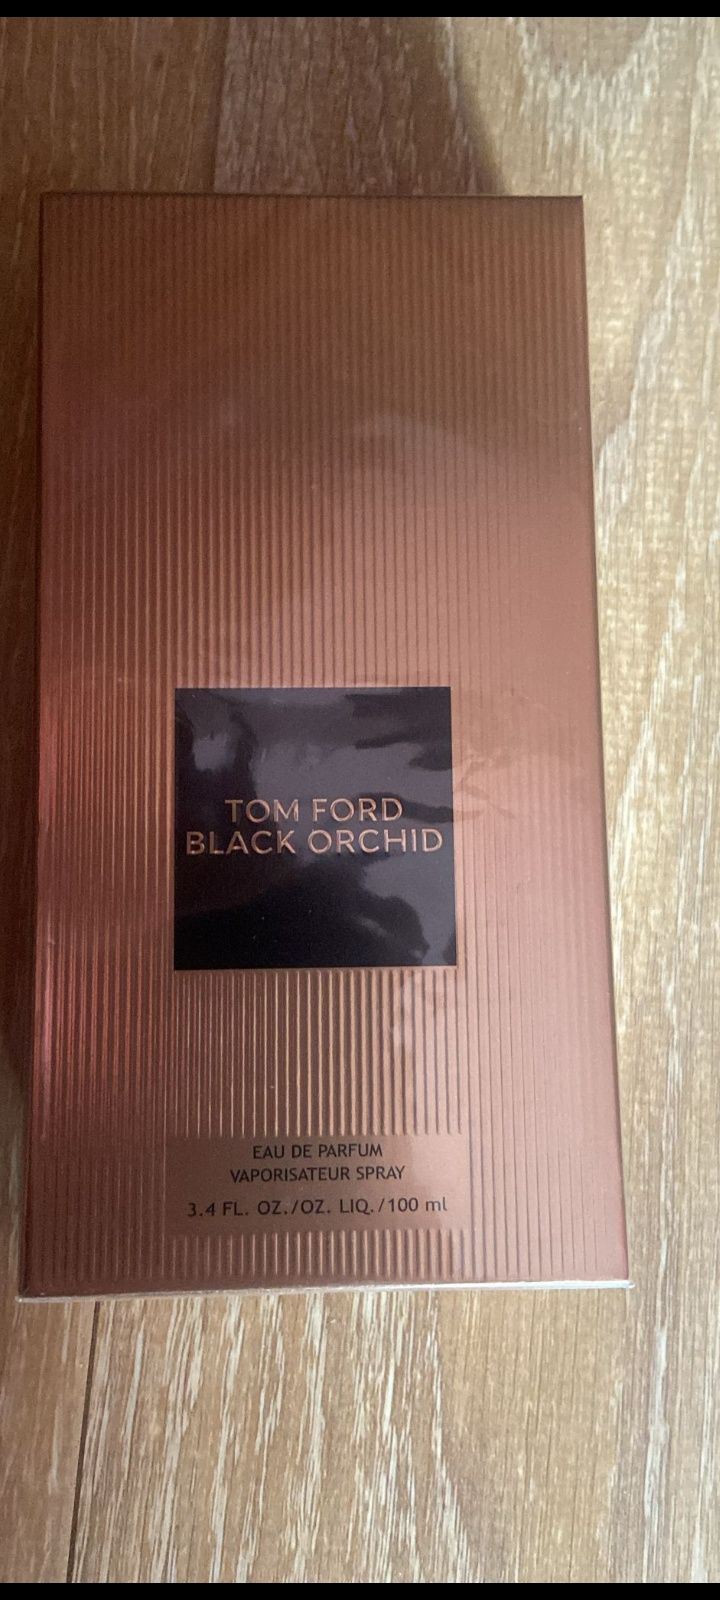 Tom Ford Black Orhid parfum